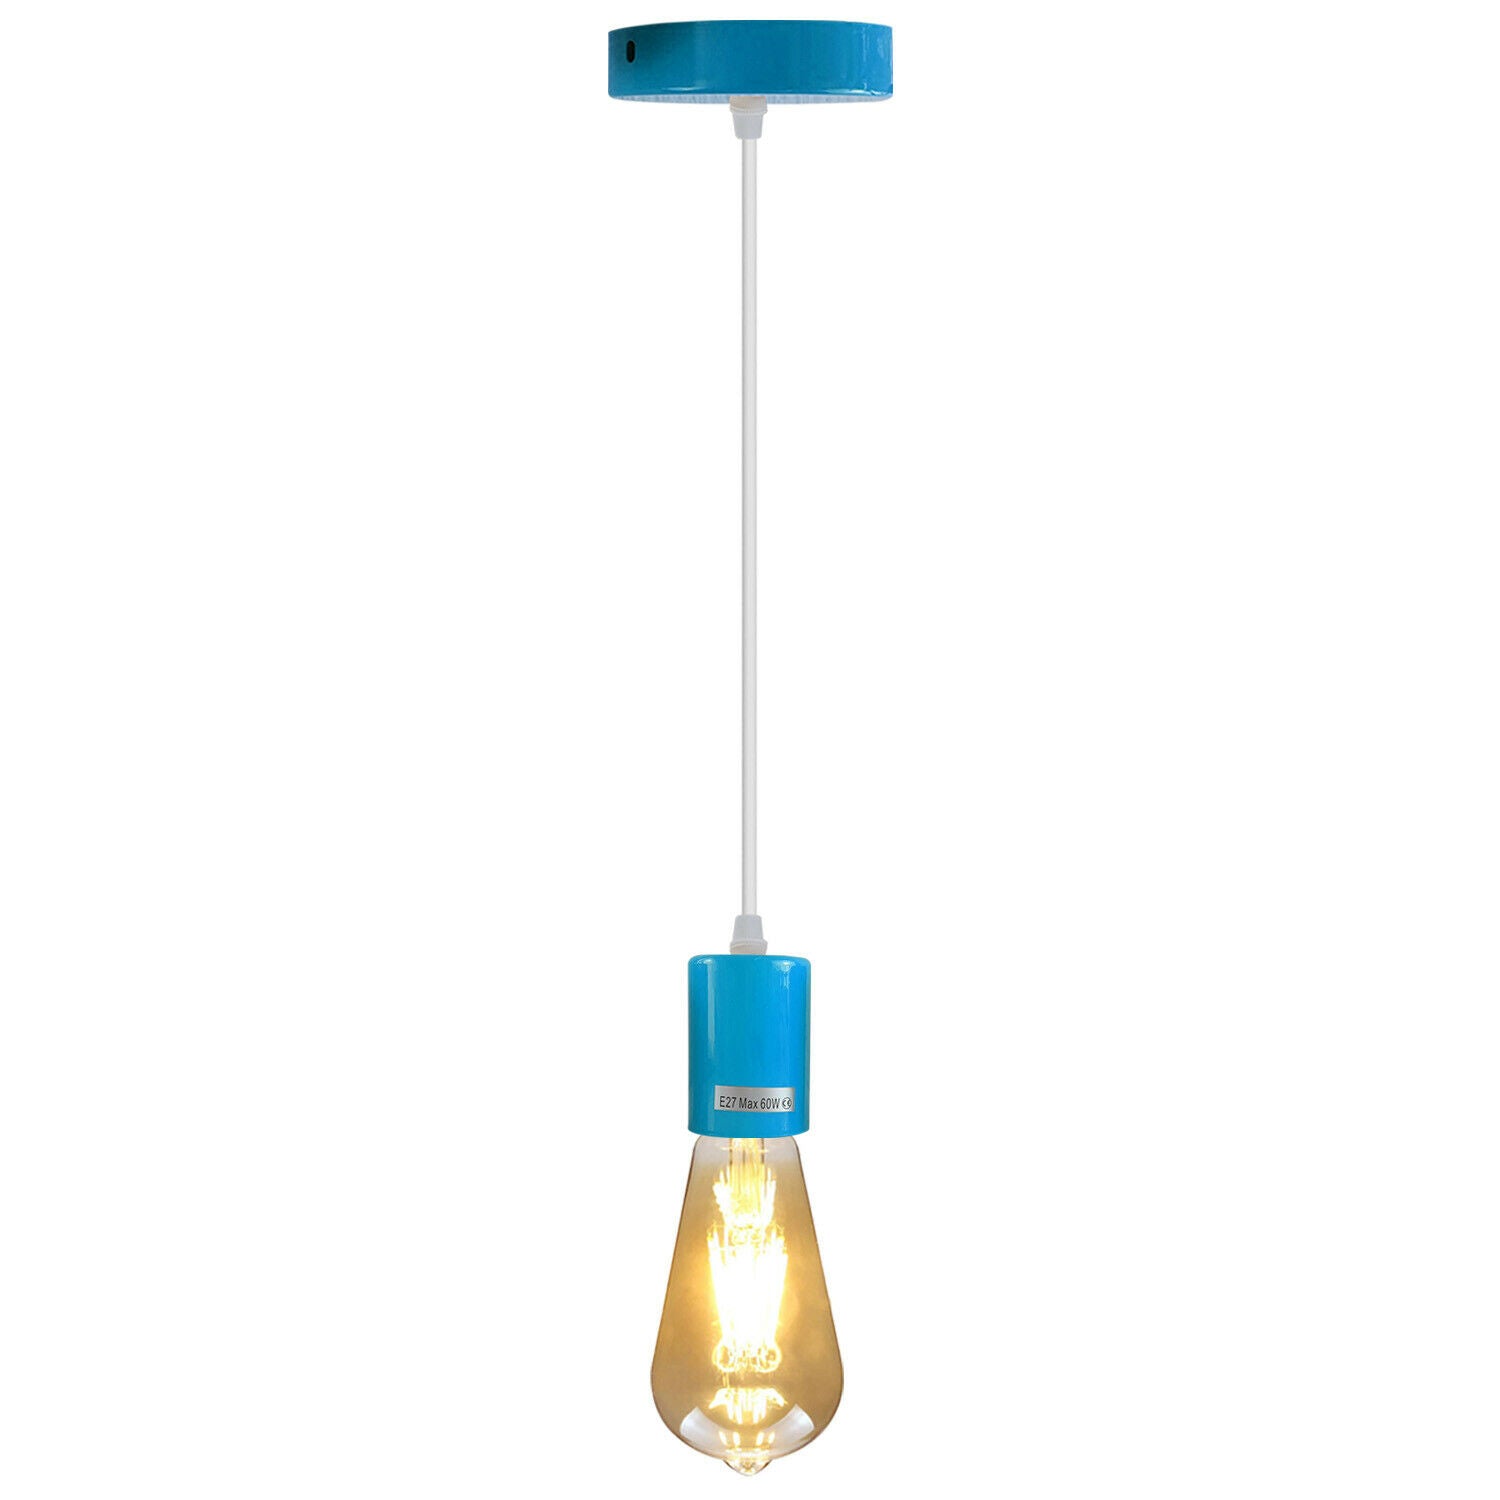 Blue E27 Ceiling Light Fitting Industrial Pendant Lamp Bulb Holder~1677 - LEDSone UK Ltd